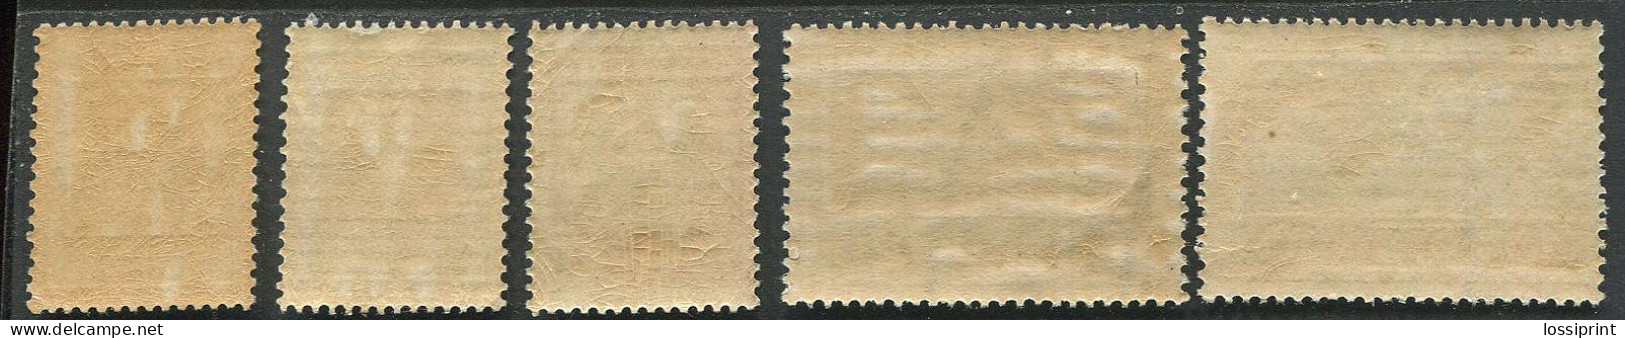 Estonia:Unused Stamps Serie Castles, Tallinn, Narva, Kuressaare, Tartu, Clue Horizontal Lines, 1927, MNH - Estonia